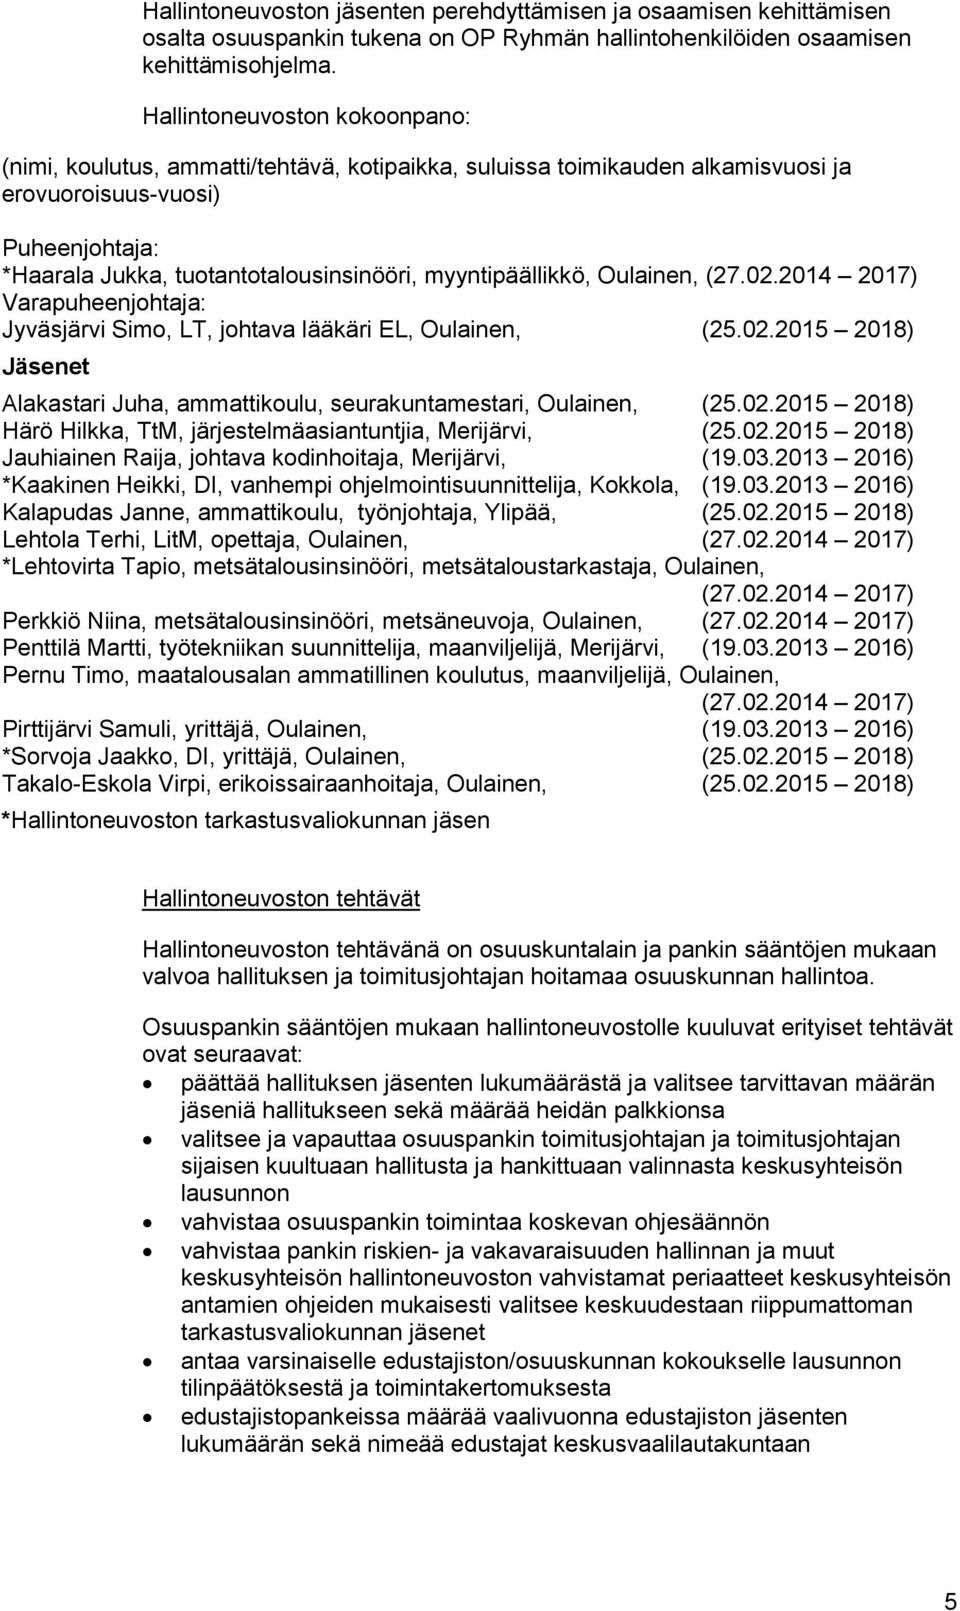 myyntipäällikkö, Oulainen, (27.02.2014 2017) Varapuheenjohtaja: Jyväsjärvi Simo, LT, johtava lääkäri EL, Oulainen, (25.02.2015 2018) Jäsenet Alakastari Juha, ammattikoulu, seurakuntamestari, Oulainen, (25.